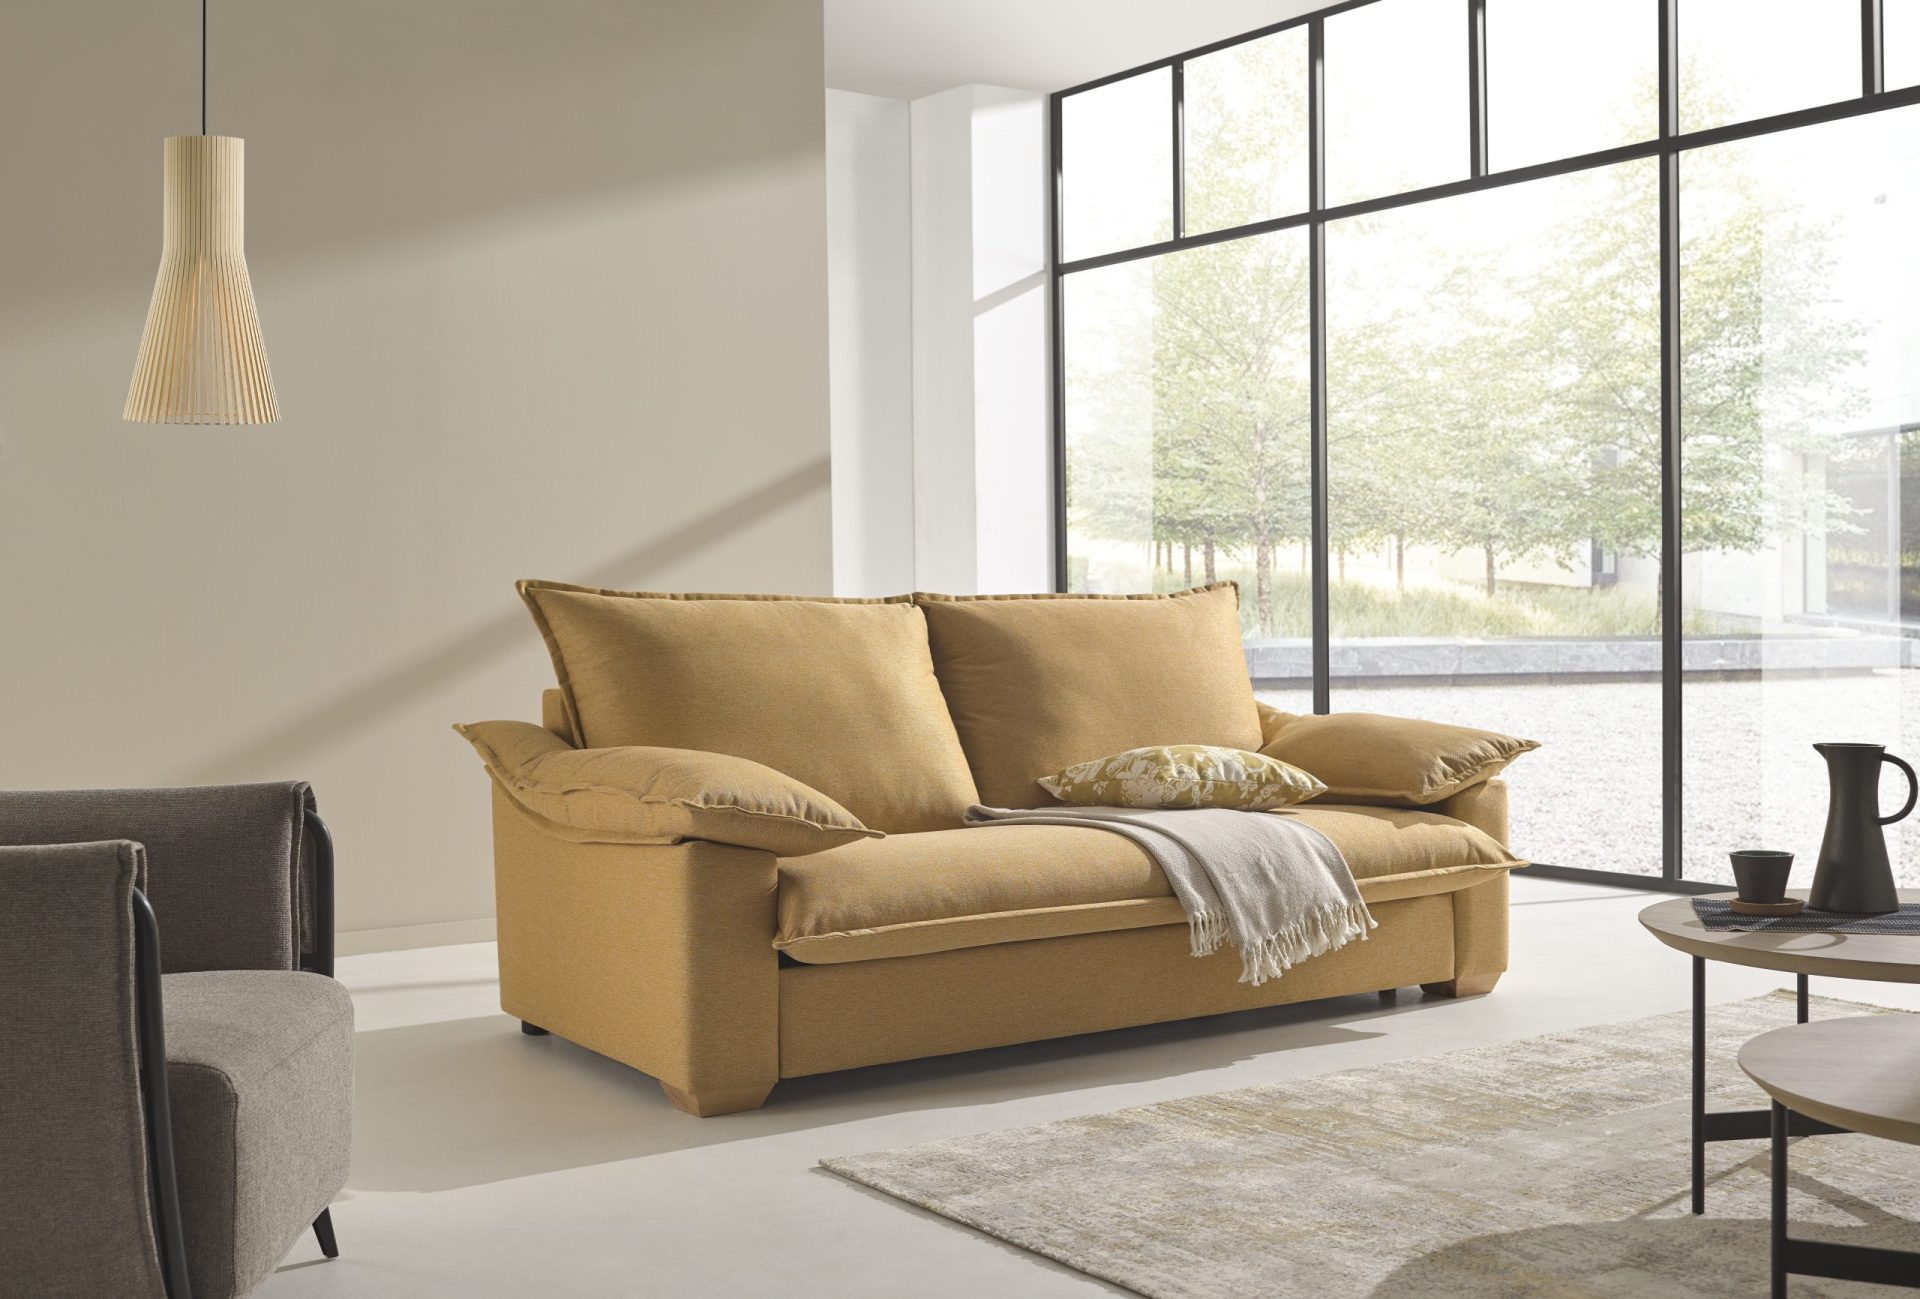 Sofá MOD04-43. ¡Optimiza tu espacio con la versatilidad del sofá cama! Descubre comodidad y funcionalidad en un solo mueble. ¡Hazte con el tuyo ahora!